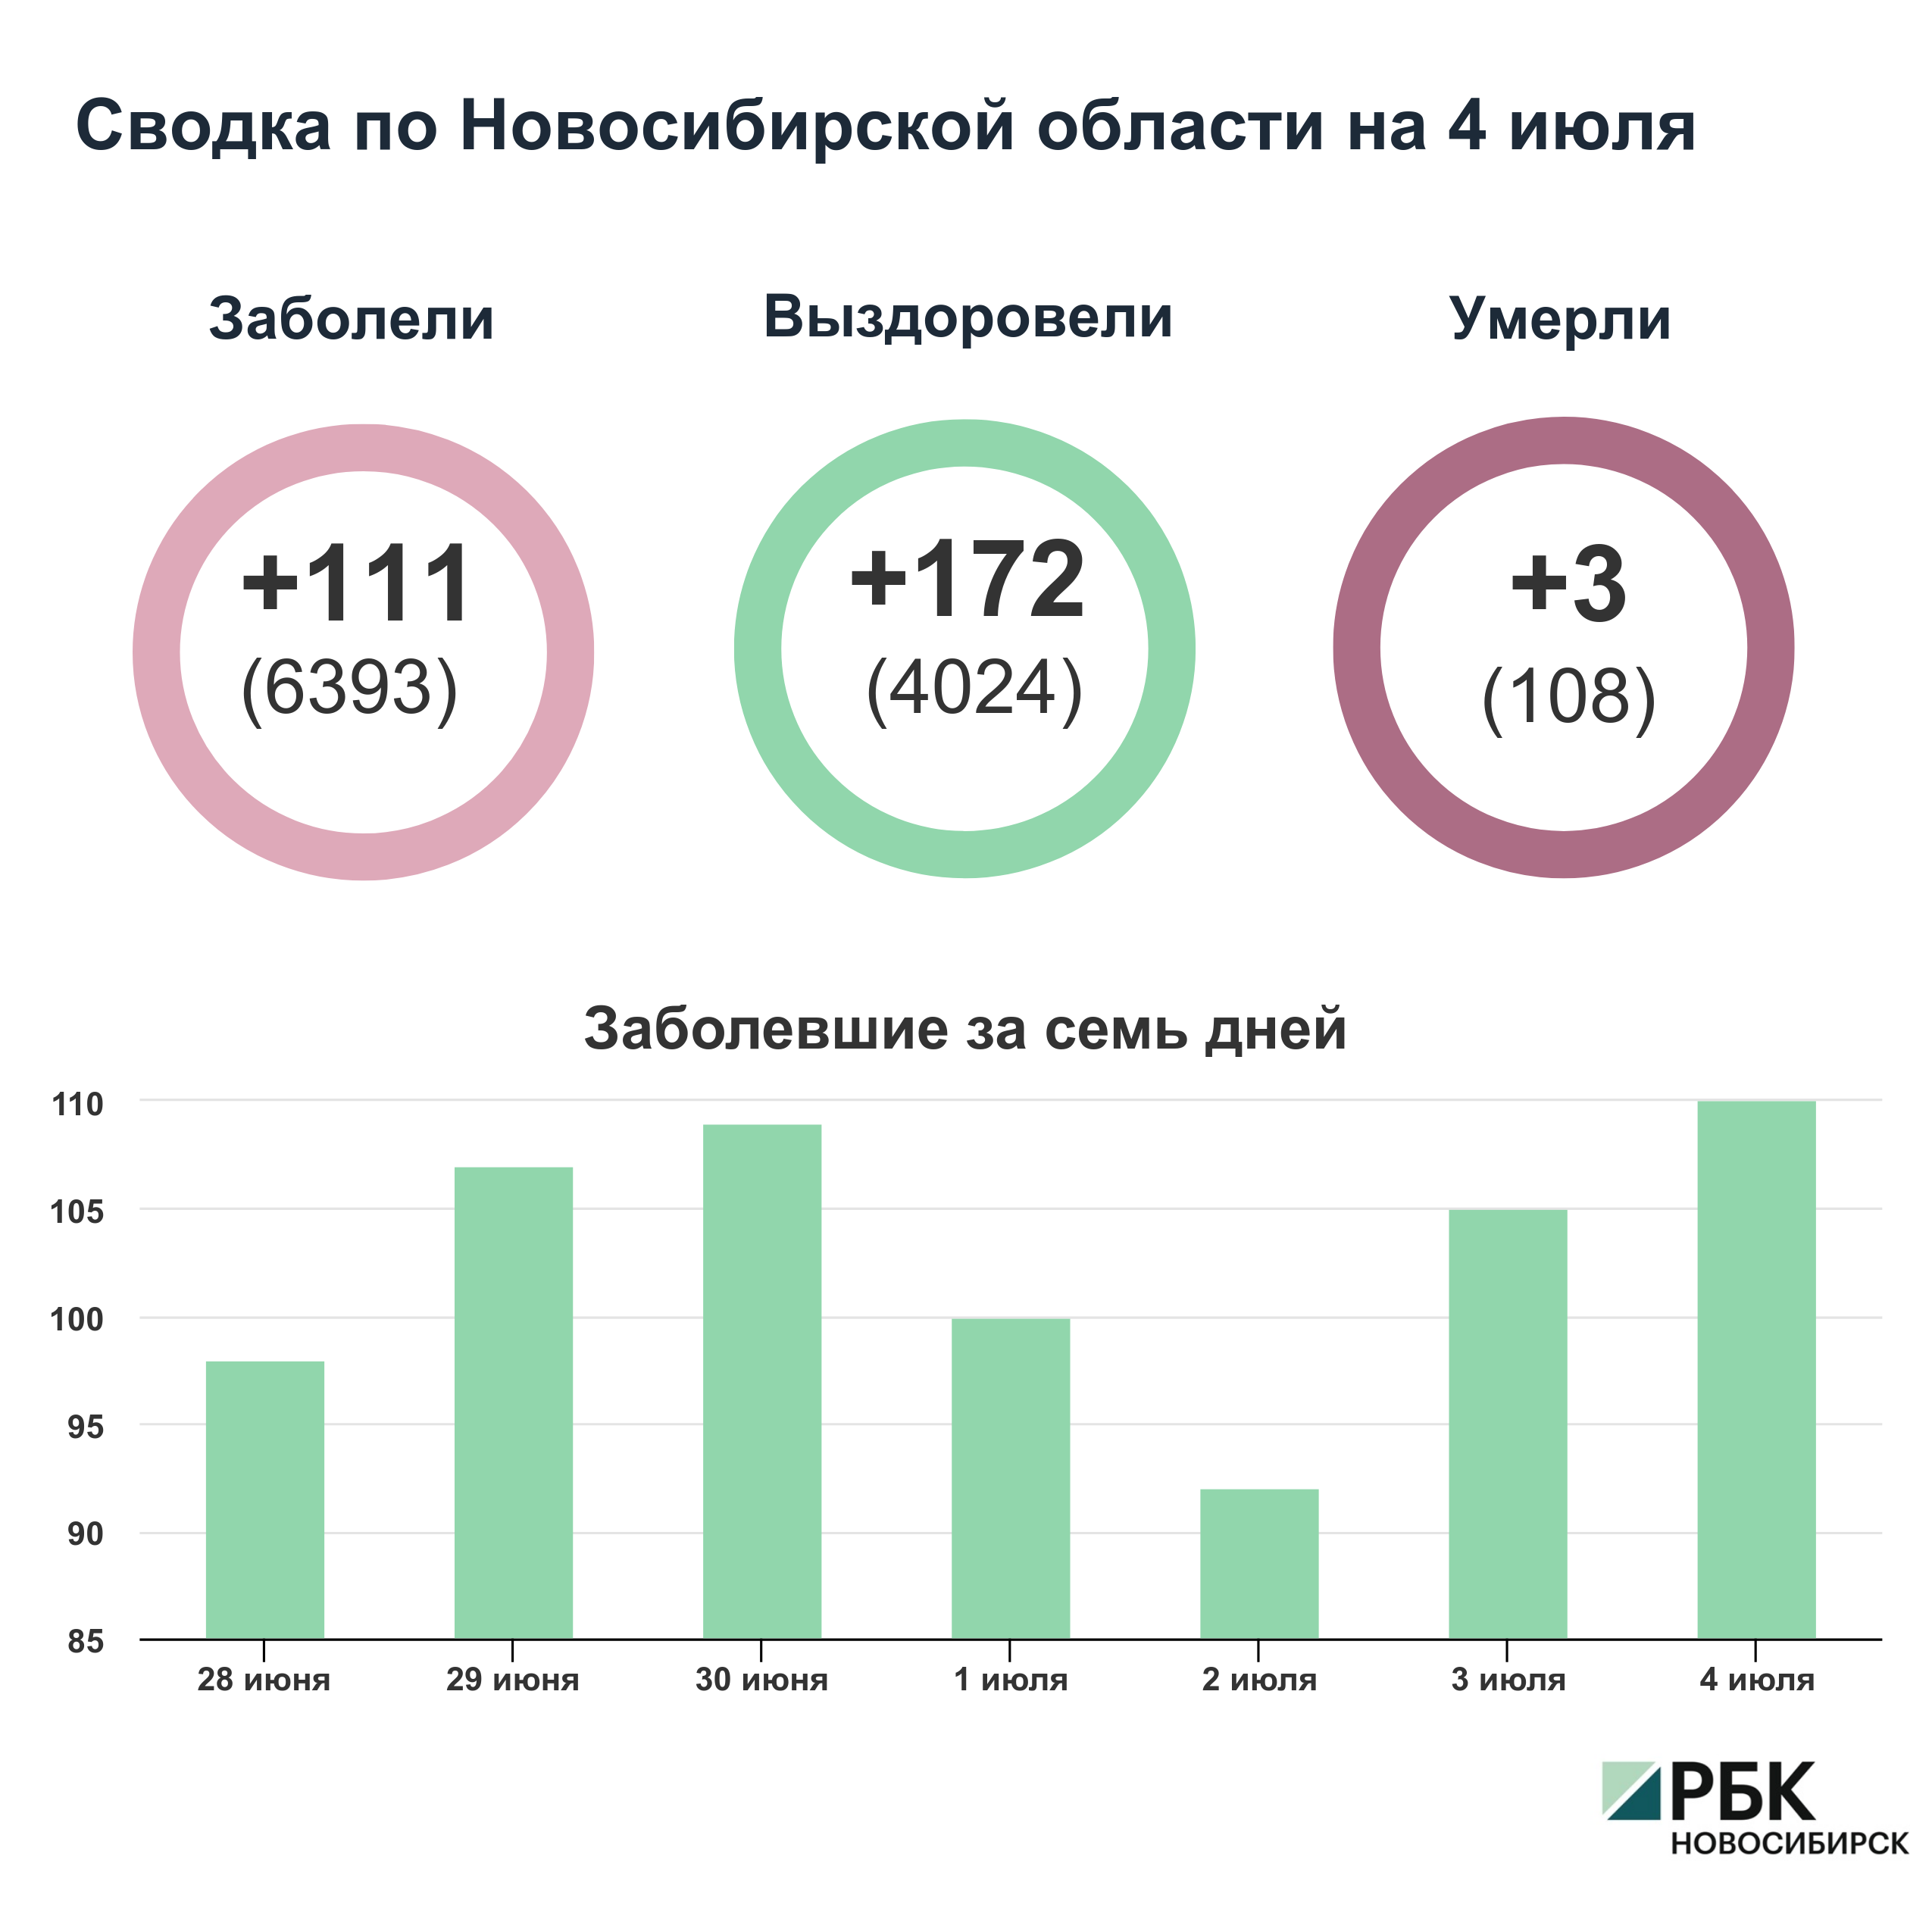 Коронавирус в Новосибирске: сводка на 4 июля